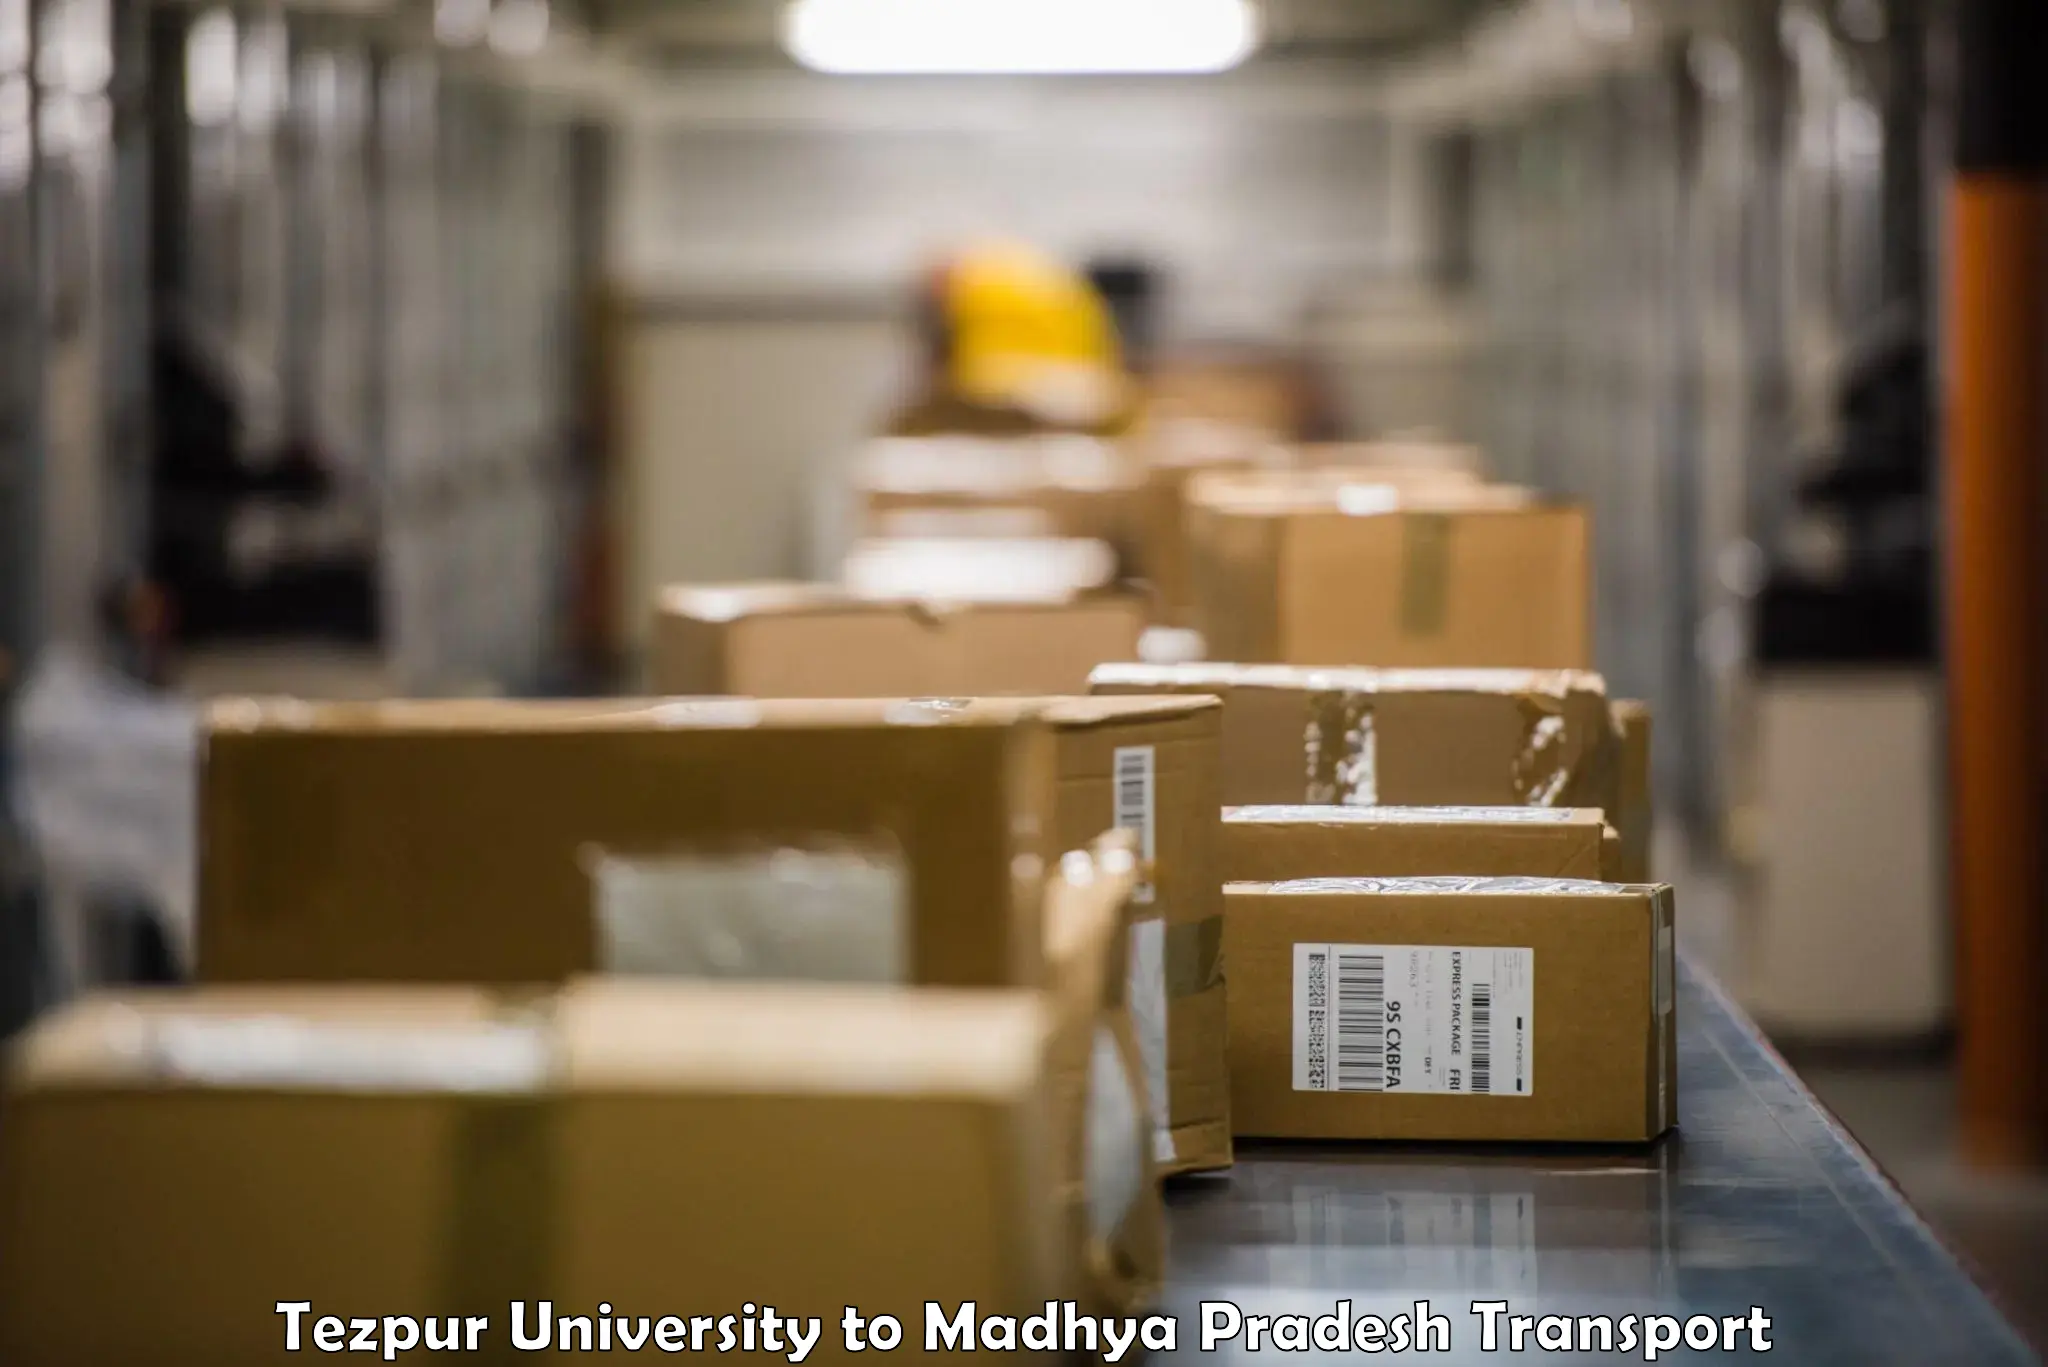 Vehicle parcel service Tezpur University to Shivpuri